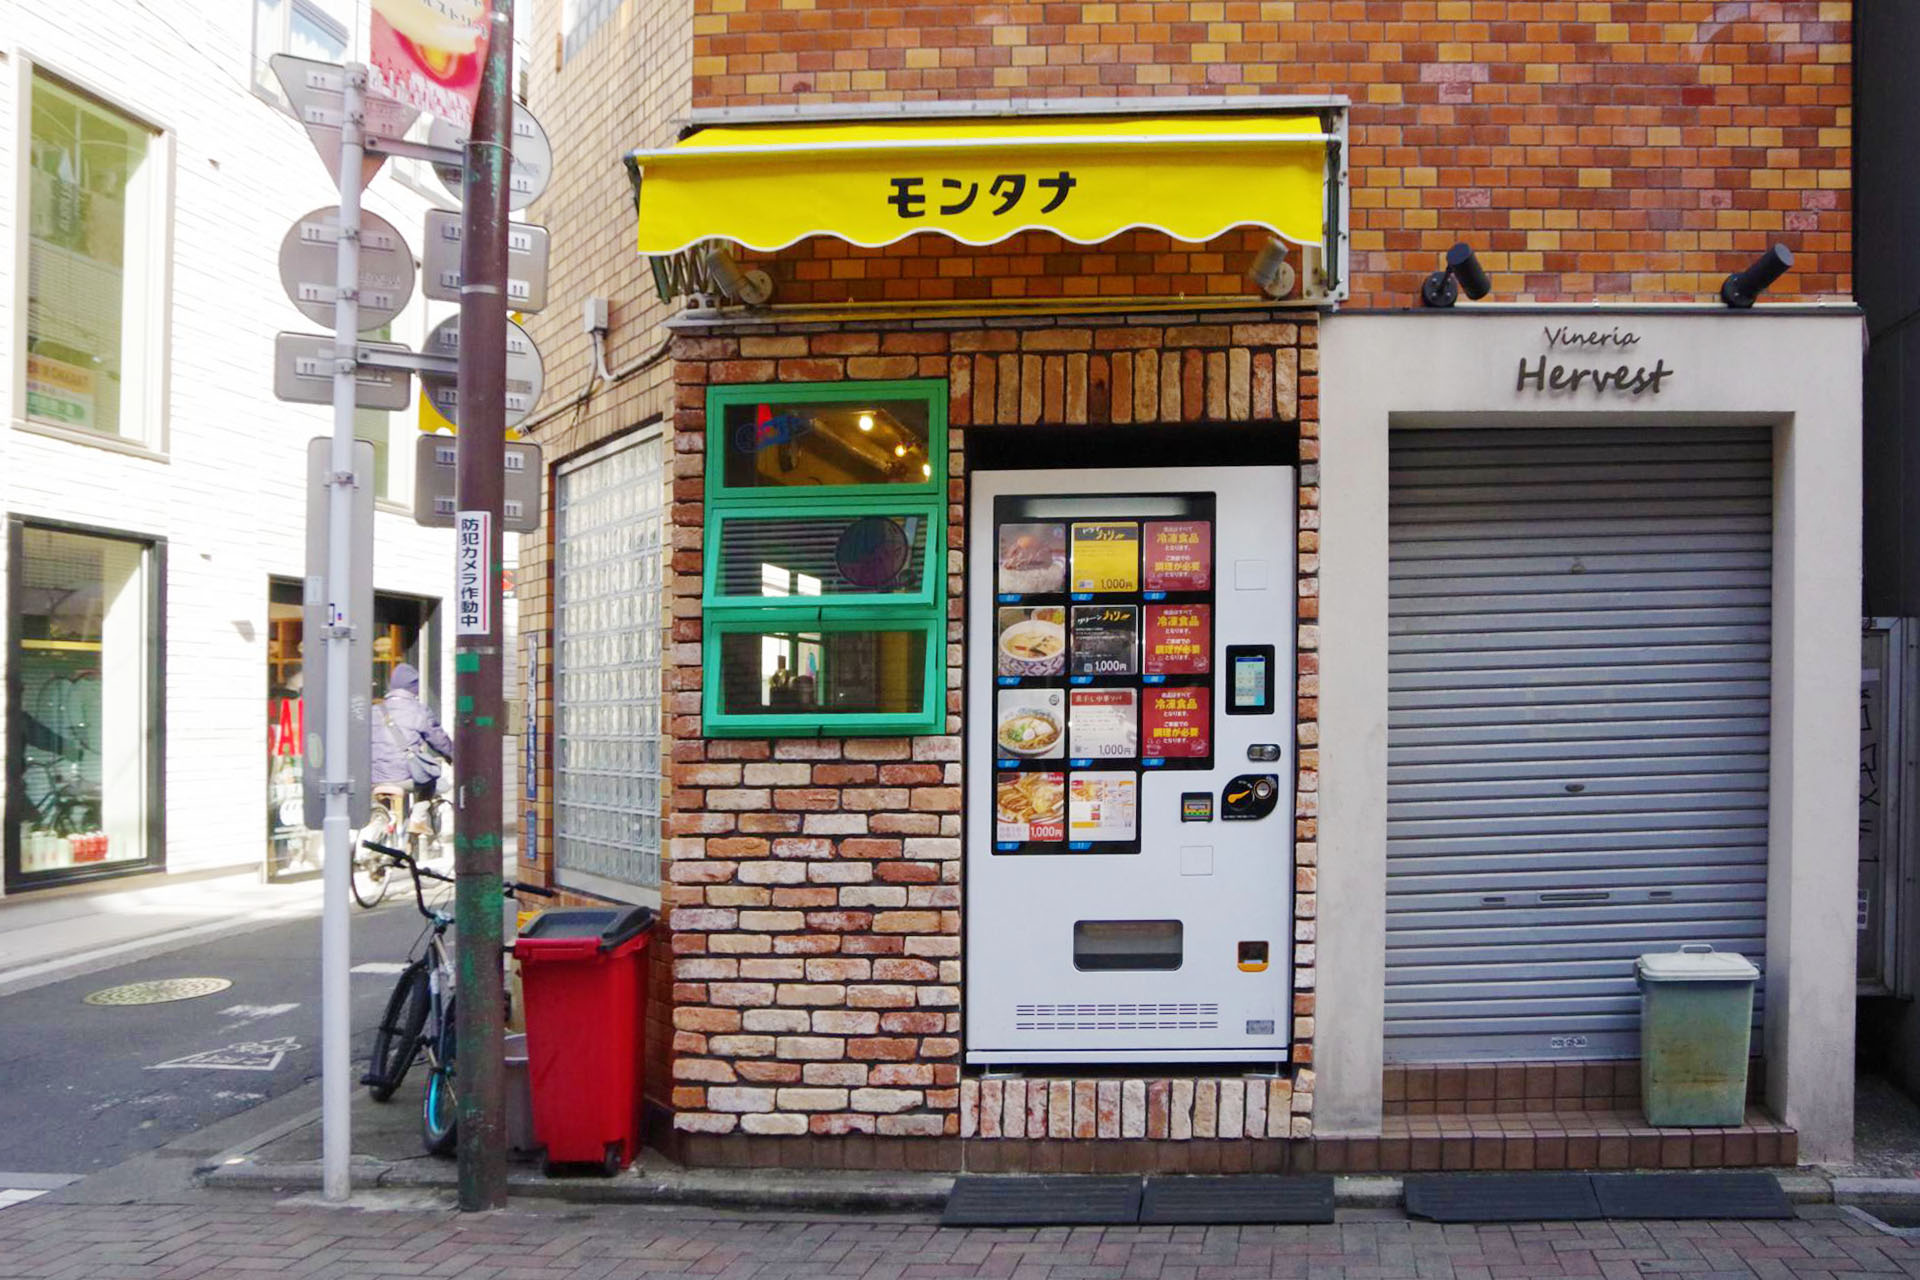 人気カリーつけ麺店「モンタナ」自動販売機でドライカレーの販売開始